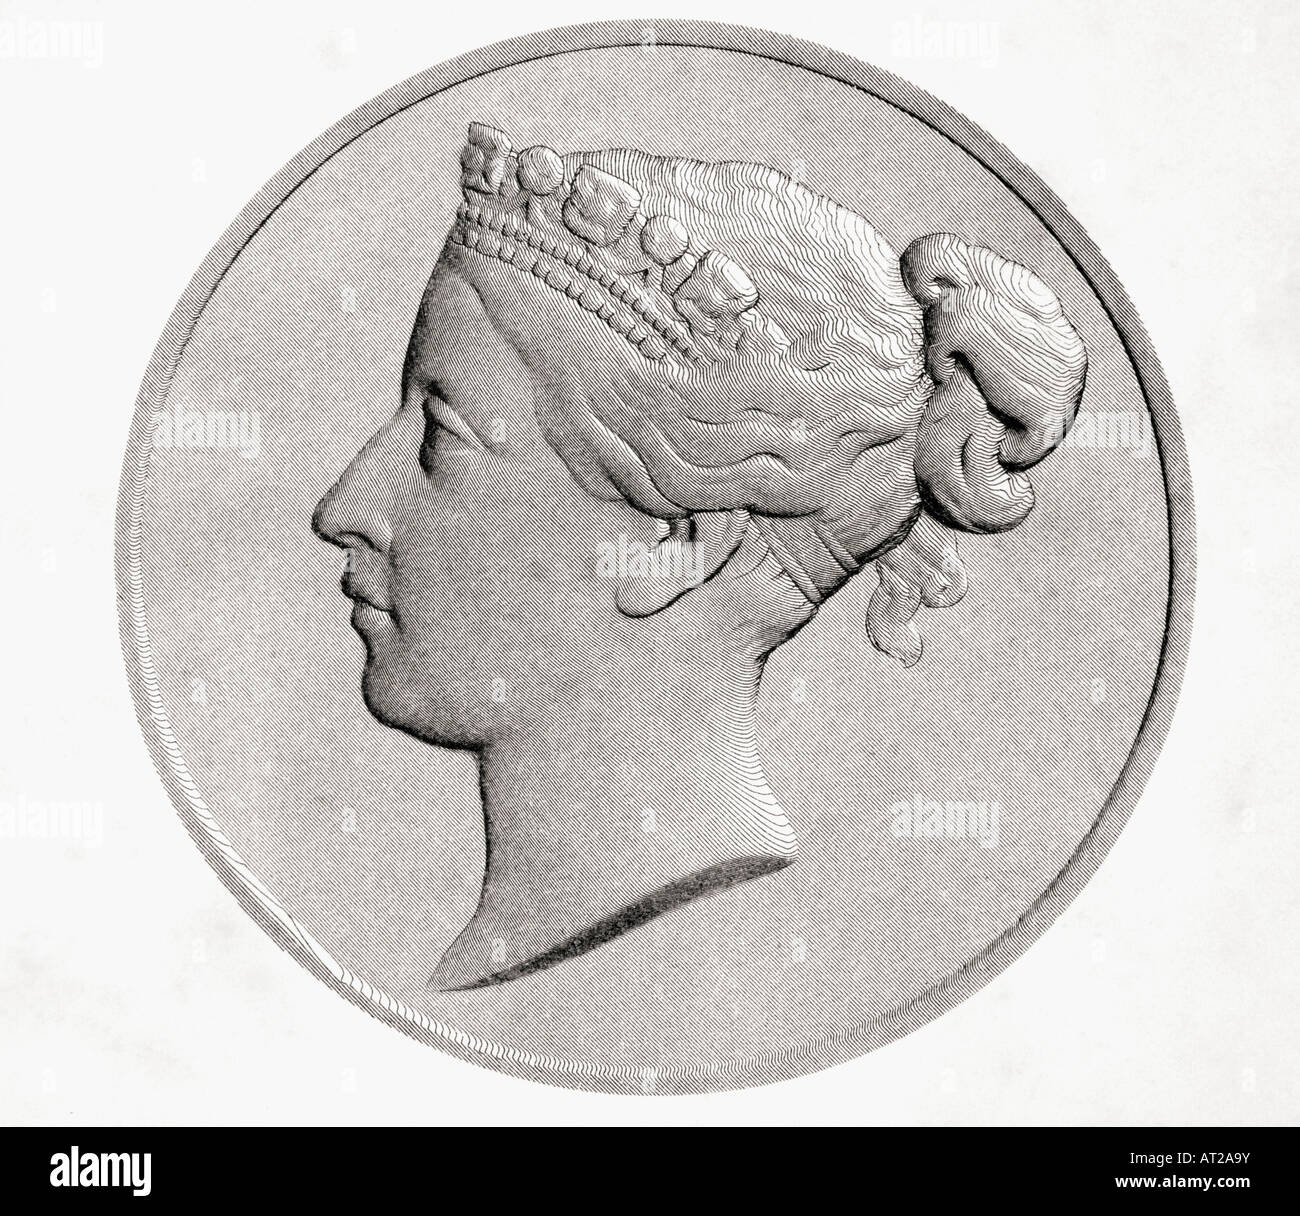 Queen Victoria, 1819 - 1901. Princess Alexandrina Victoria of Saxe Coburg Stock Photo